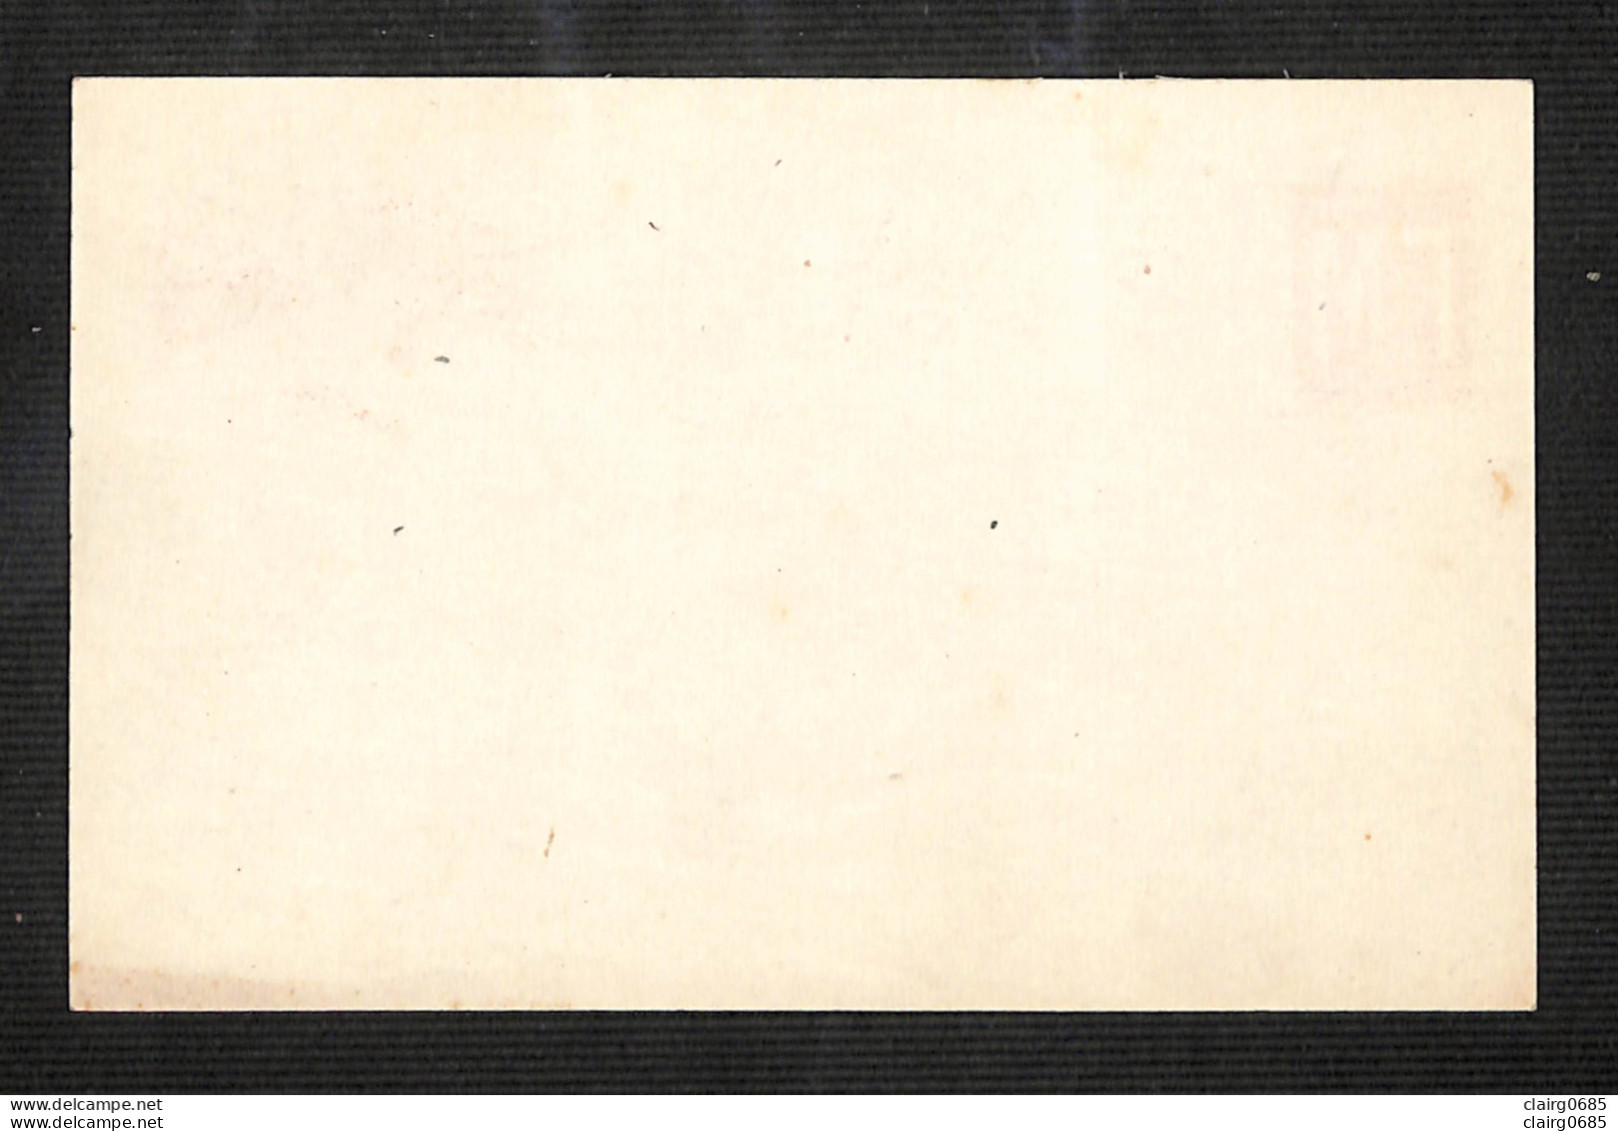 MILITARIA - Carte Drapeaux (Angleterre, France, Etats-unis) Correspondance Des Armées De La République - FM - 1914  - Documents